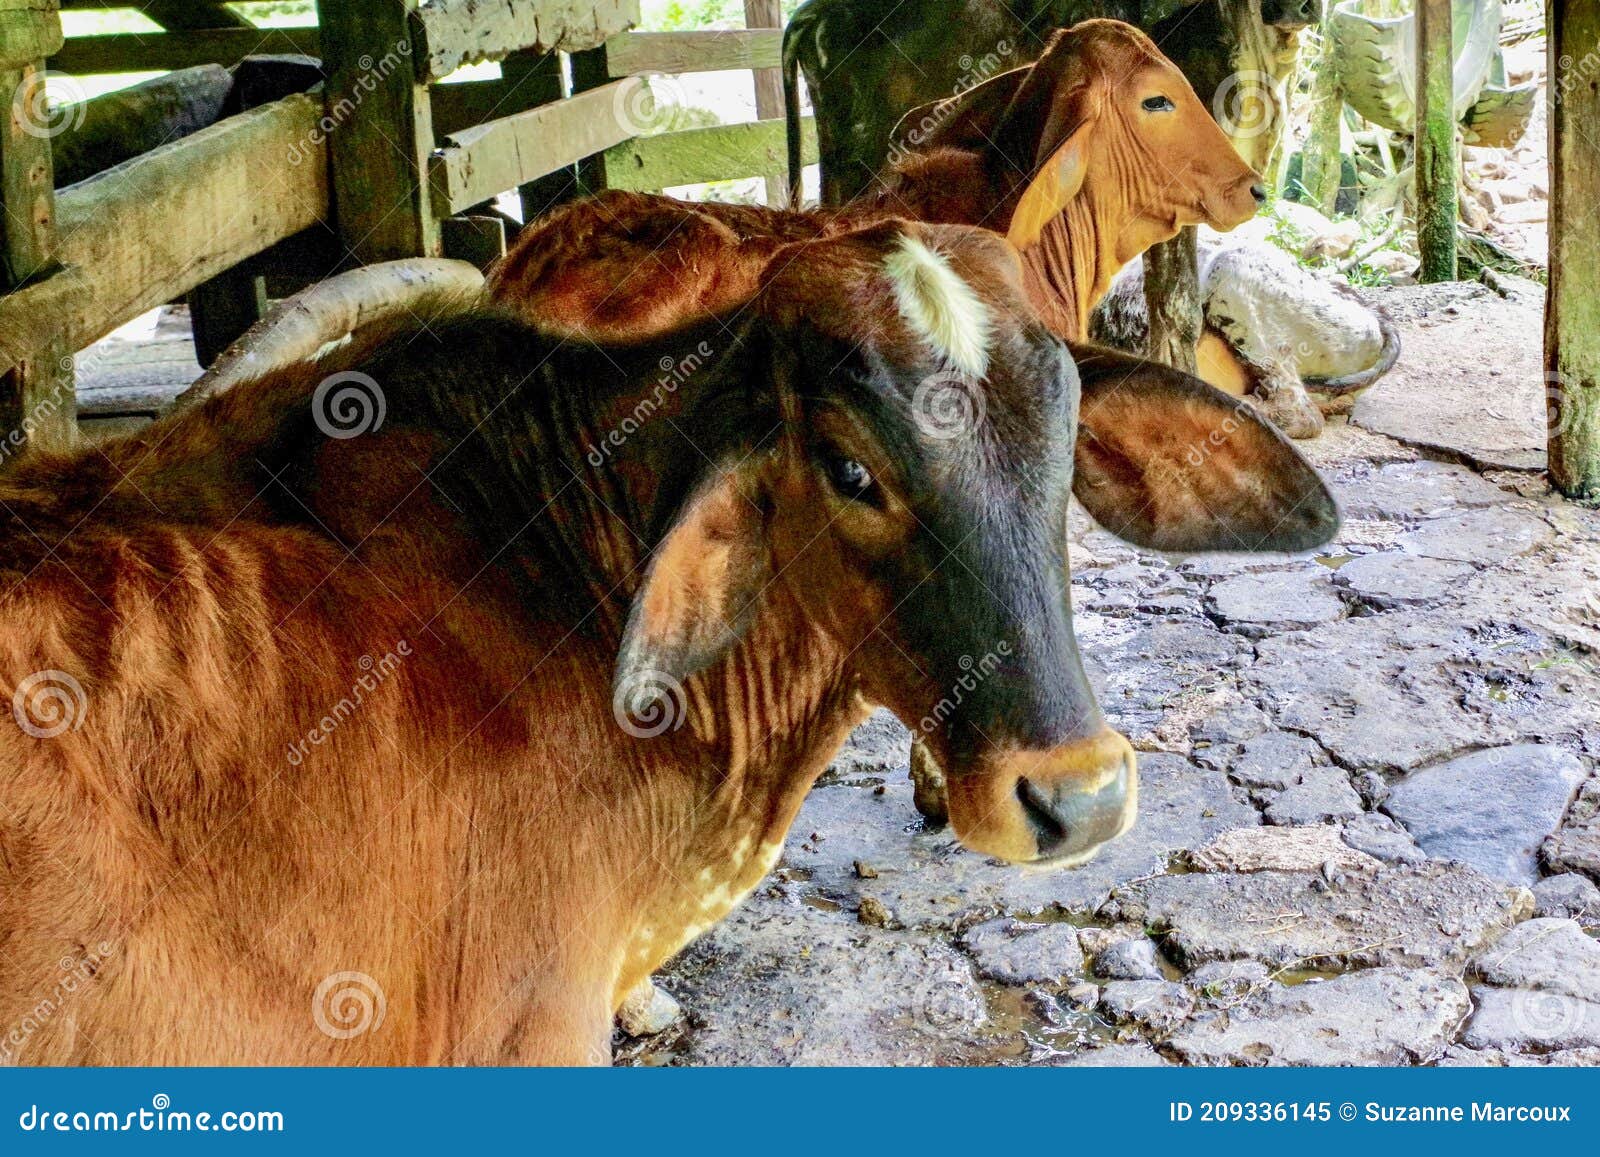 Farm Animals, Costa Rica, Central America Stock Image - Image of colors,  bovine: 209336145